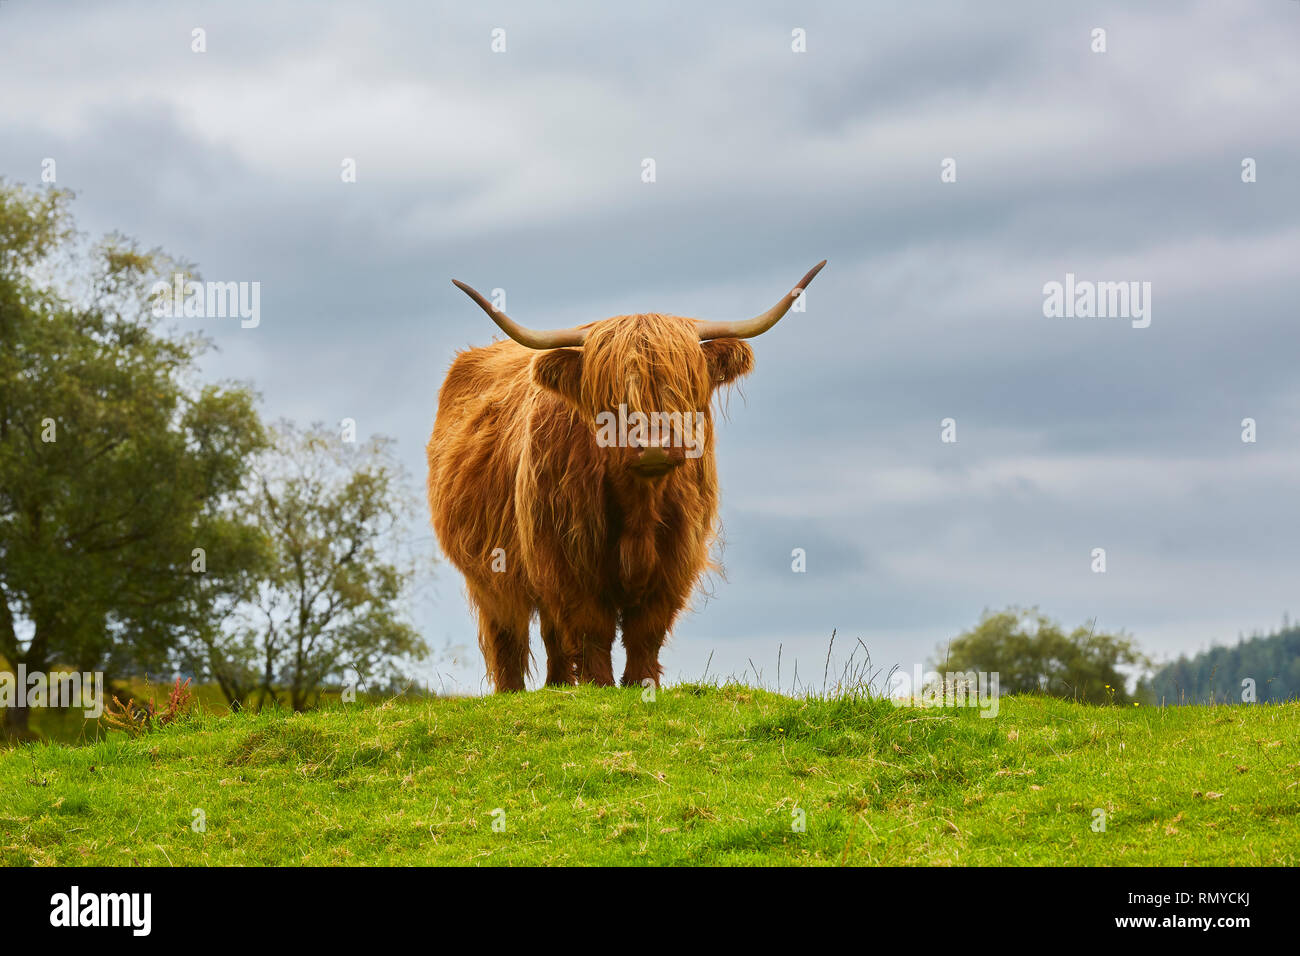 Una vaca Highland adquirir su propia estaba junto a un arbusto mirando hacia la cámara en las Highlands de Escocia con nubes grises en el fondo Foto de stock